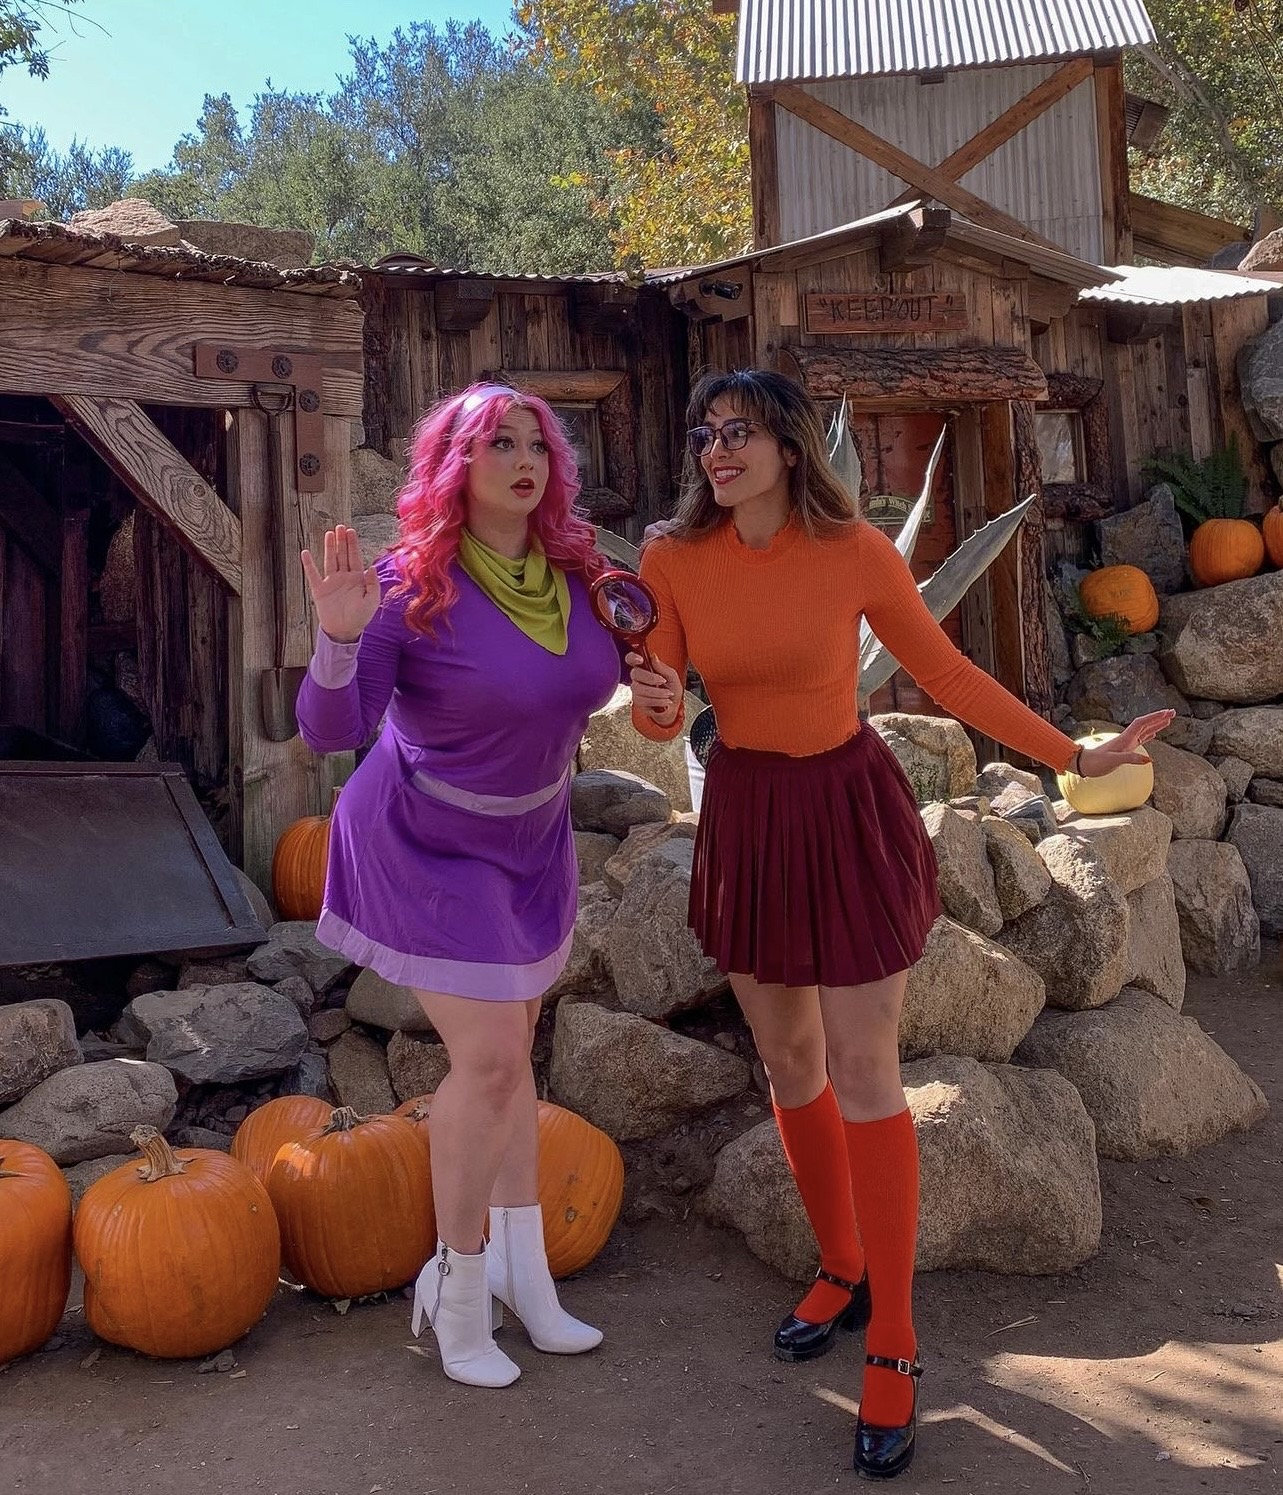 Velma (Scooby-Doo) Costume